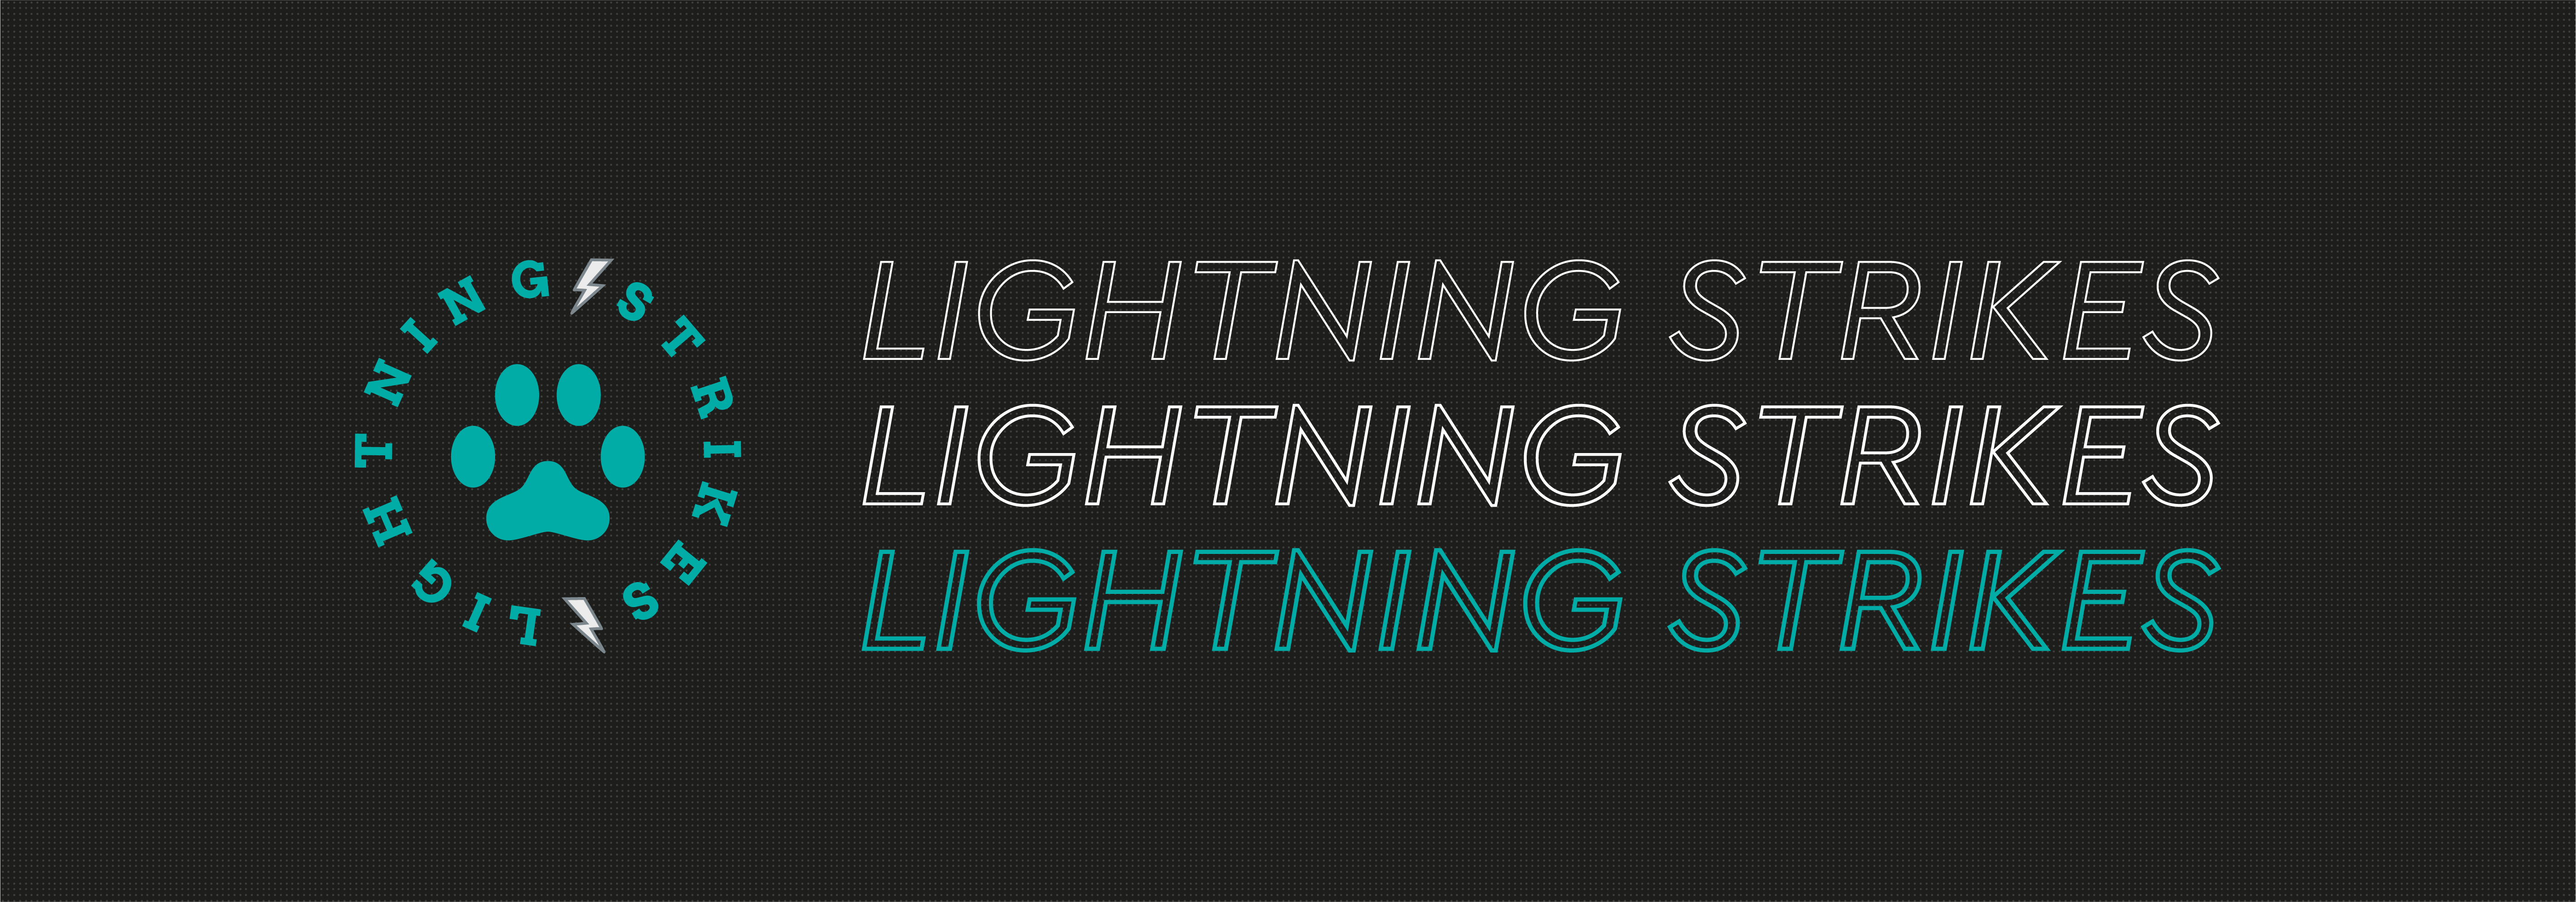 Lightning Strikes Flyball Team